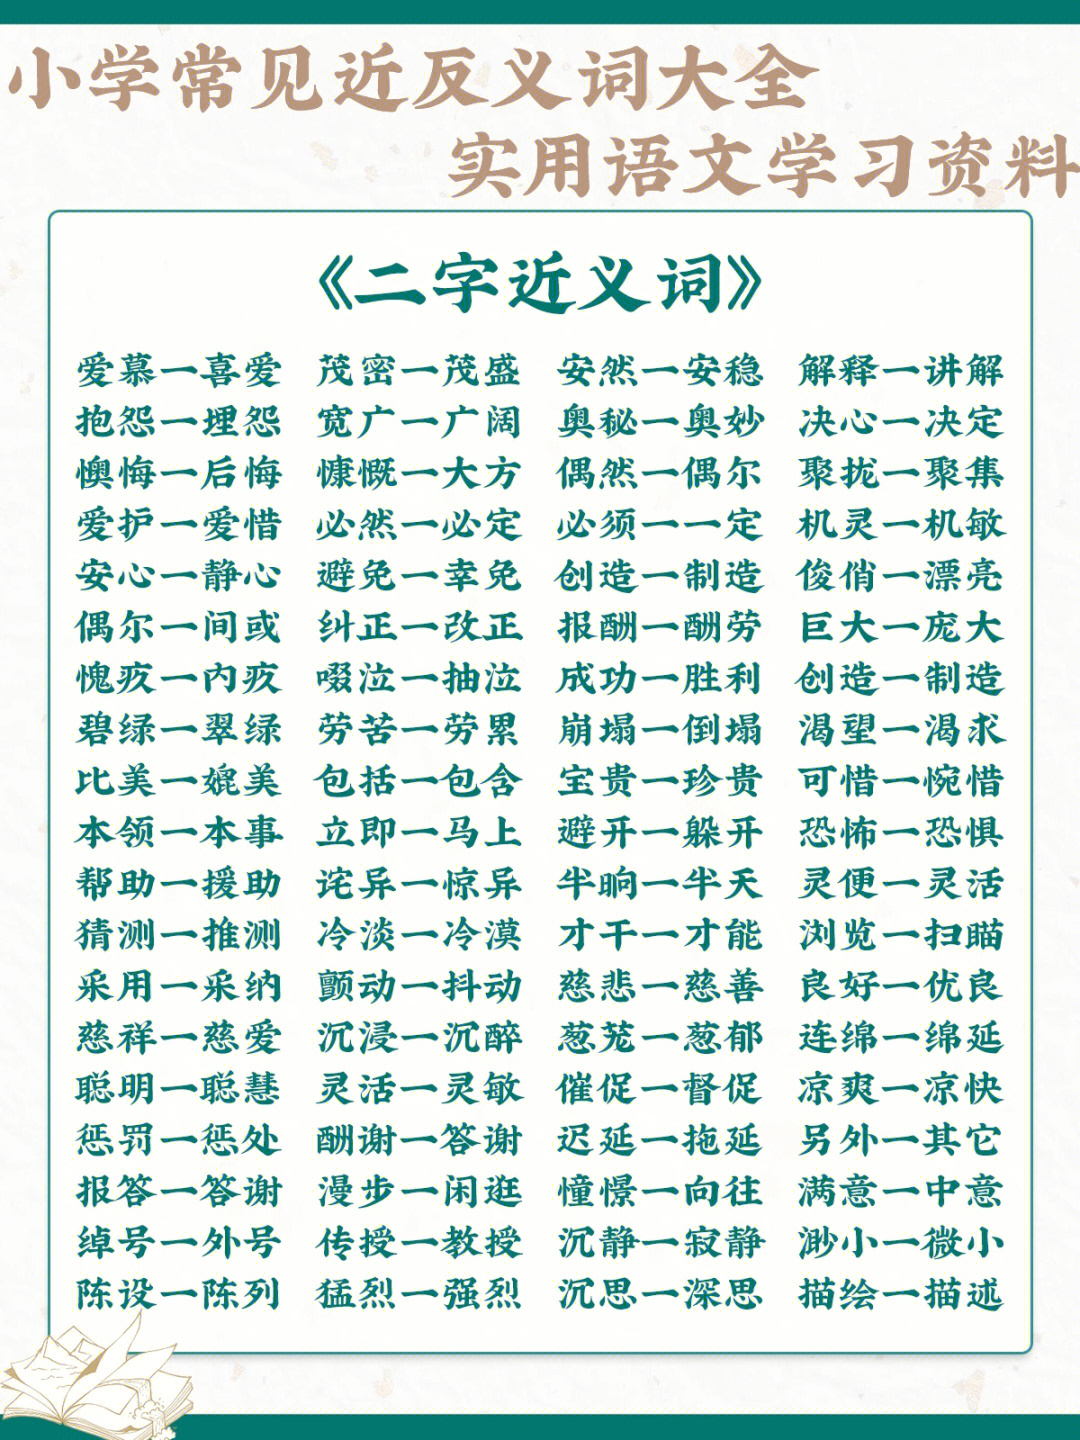 中国语言的博大精深～77本期内容为大家精心准备了近义词和反义词